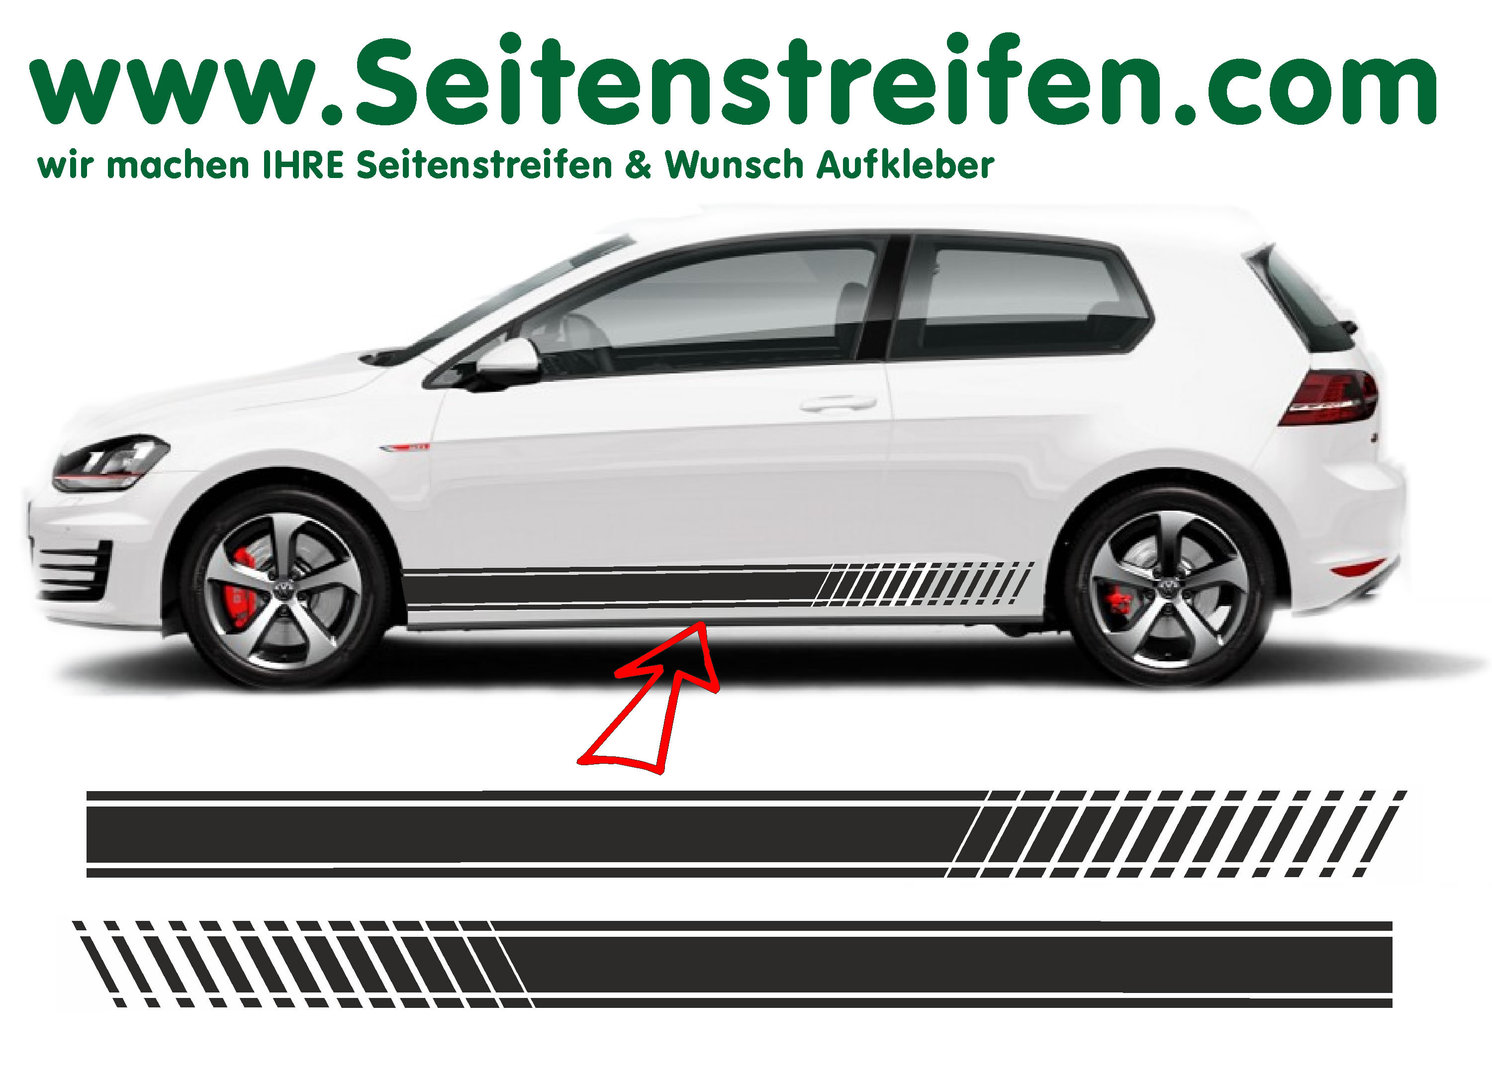 VW Golf EVO Seitenstreifen Aufkleber Set - für 3+4 Türer Nr.: 8501